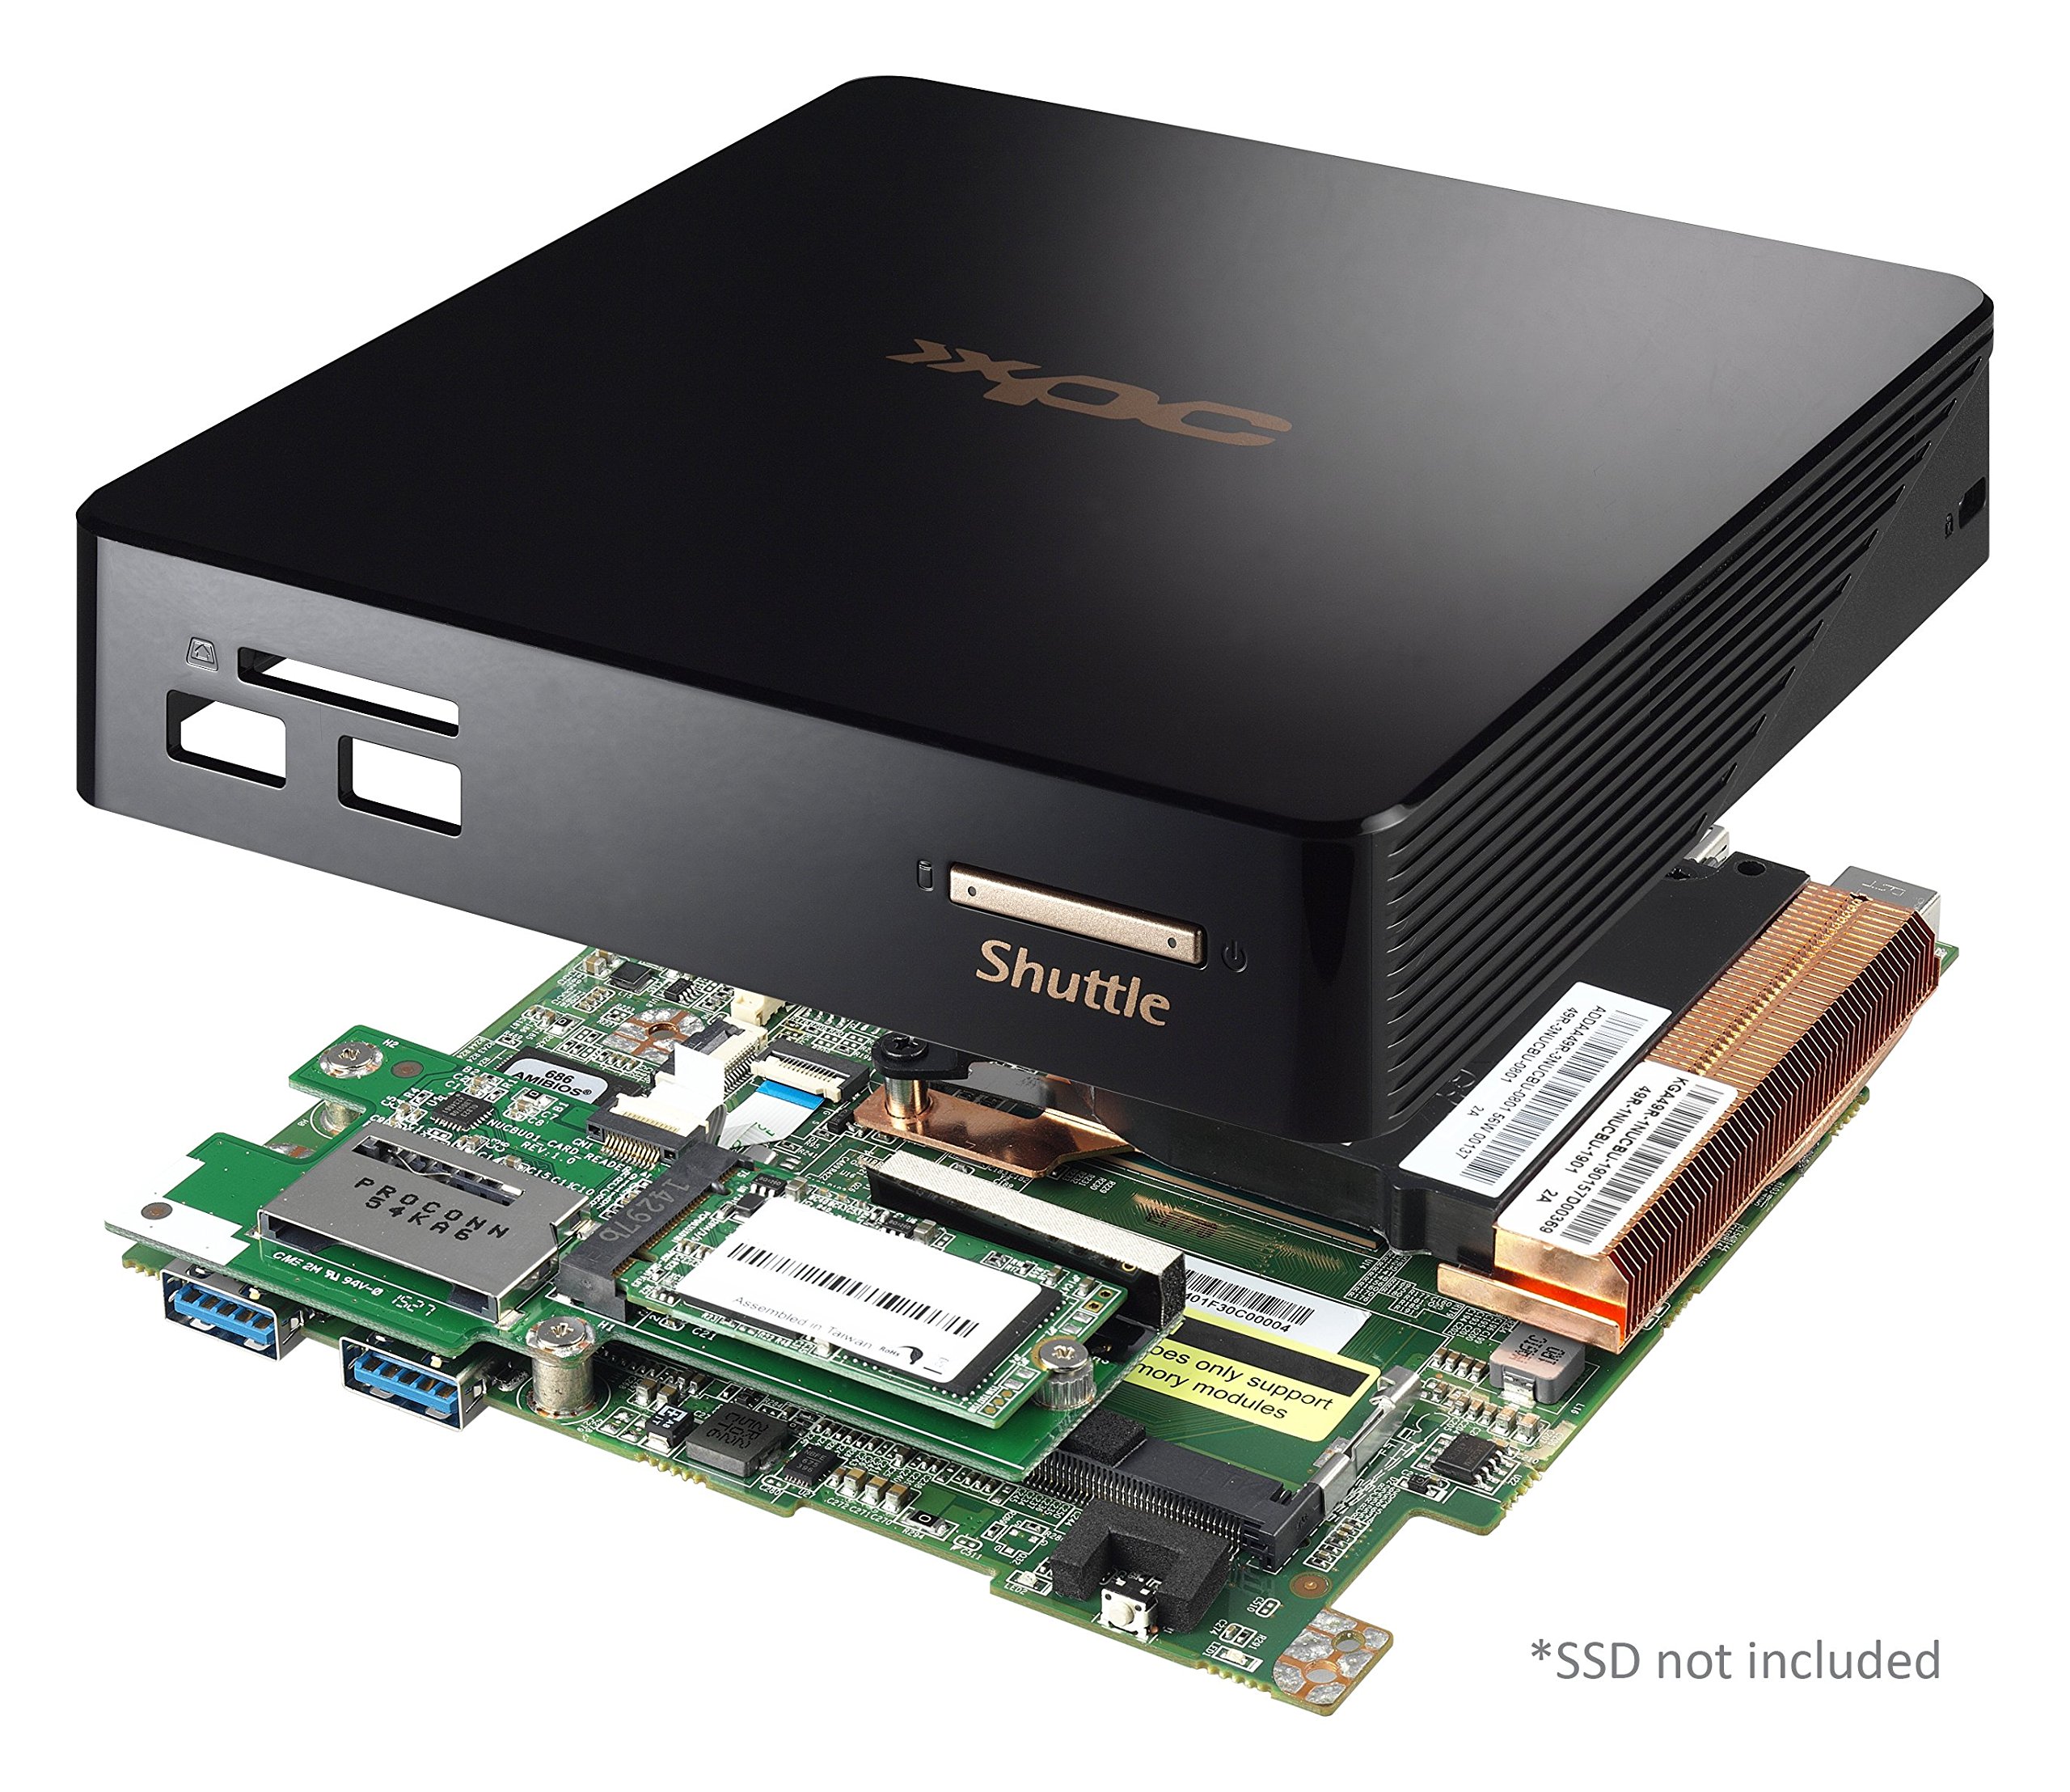 Shuttle XPC Nano NC01U3 Intel Broadwell Core i3-5005U, Support 4K Ultra HD Video, DDR3L SODIMM Max 16GB,Black